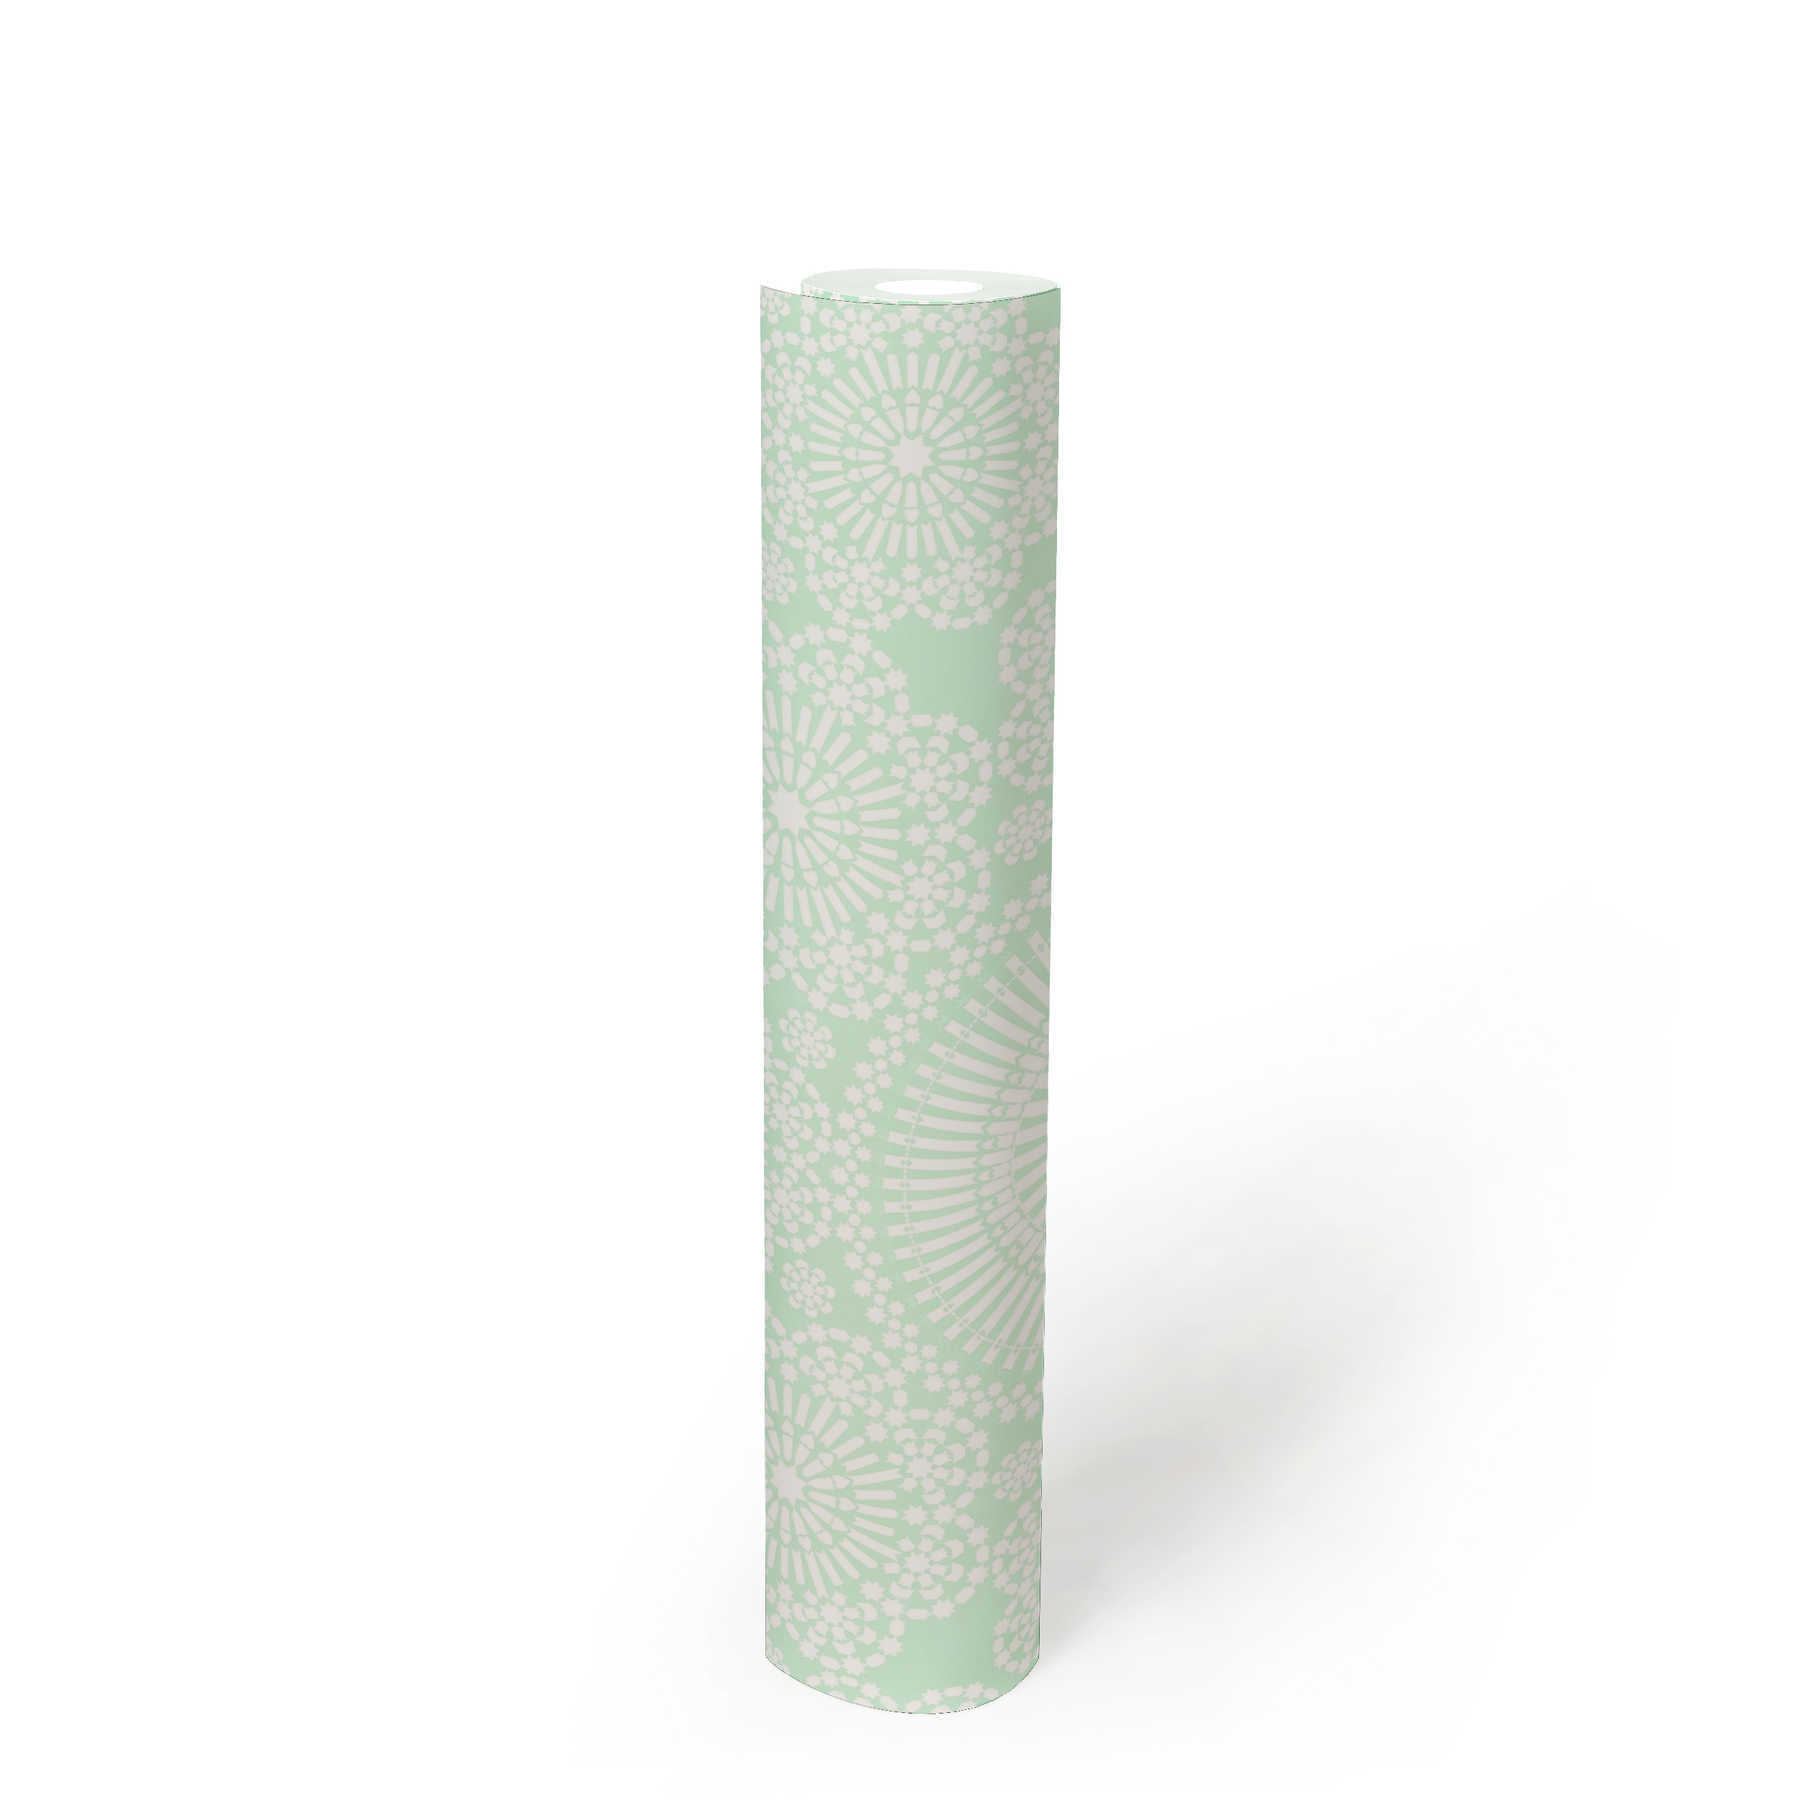             Mandala Tapete mit Blumen Design – Blau, Grün, Weiß
        